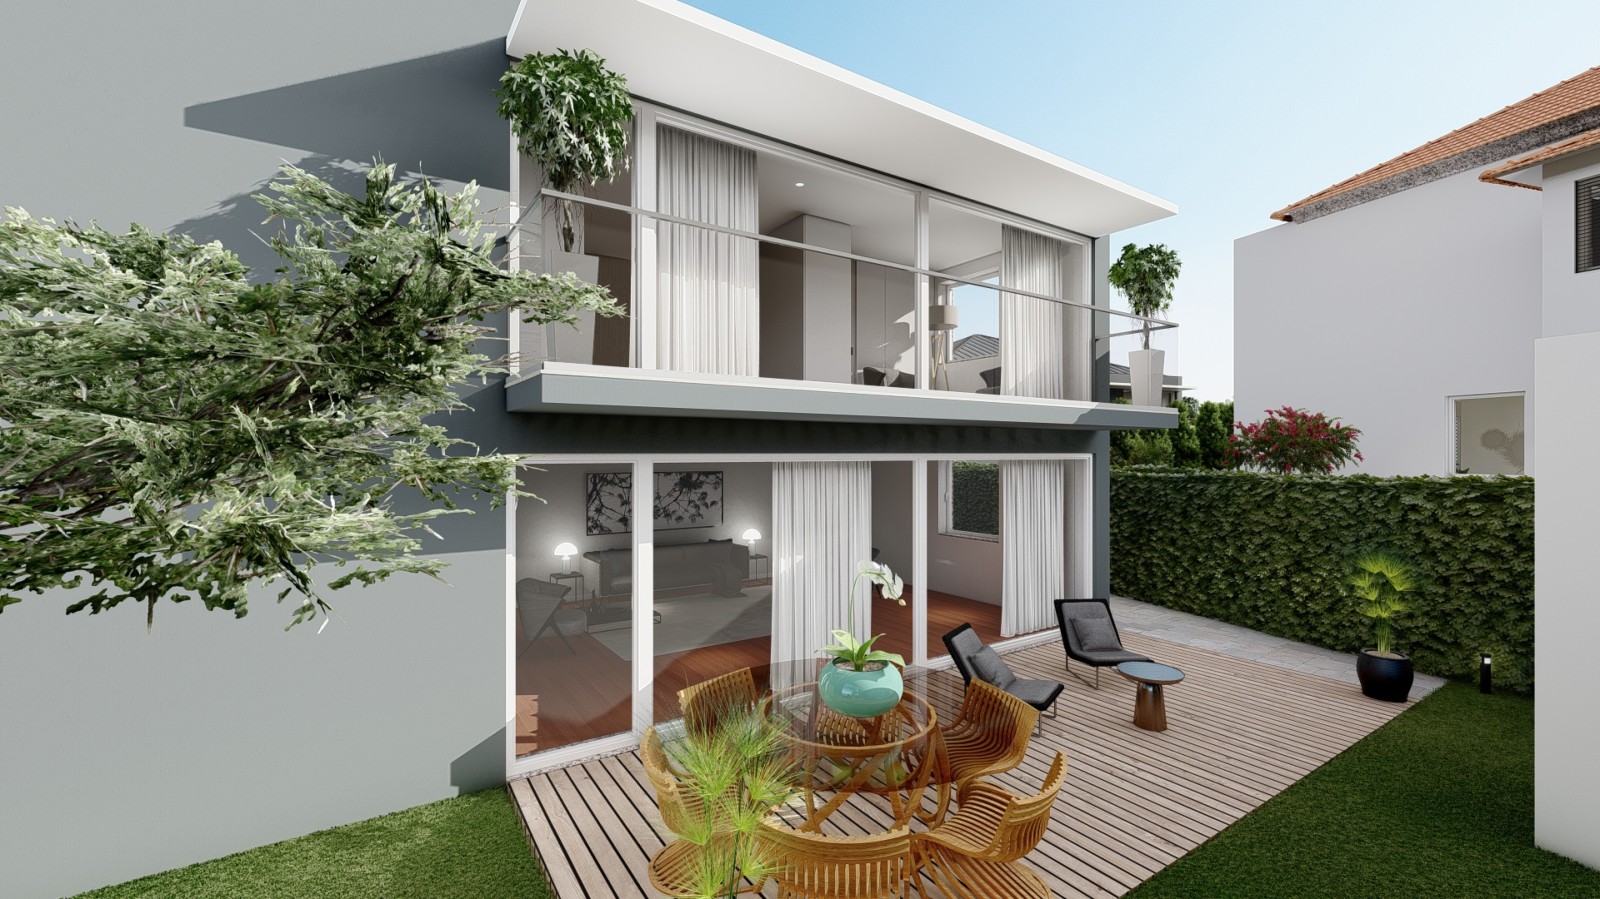 New luxury villa with garden, for sale, in Leça da Palmeira, Porto, Portugal_216764